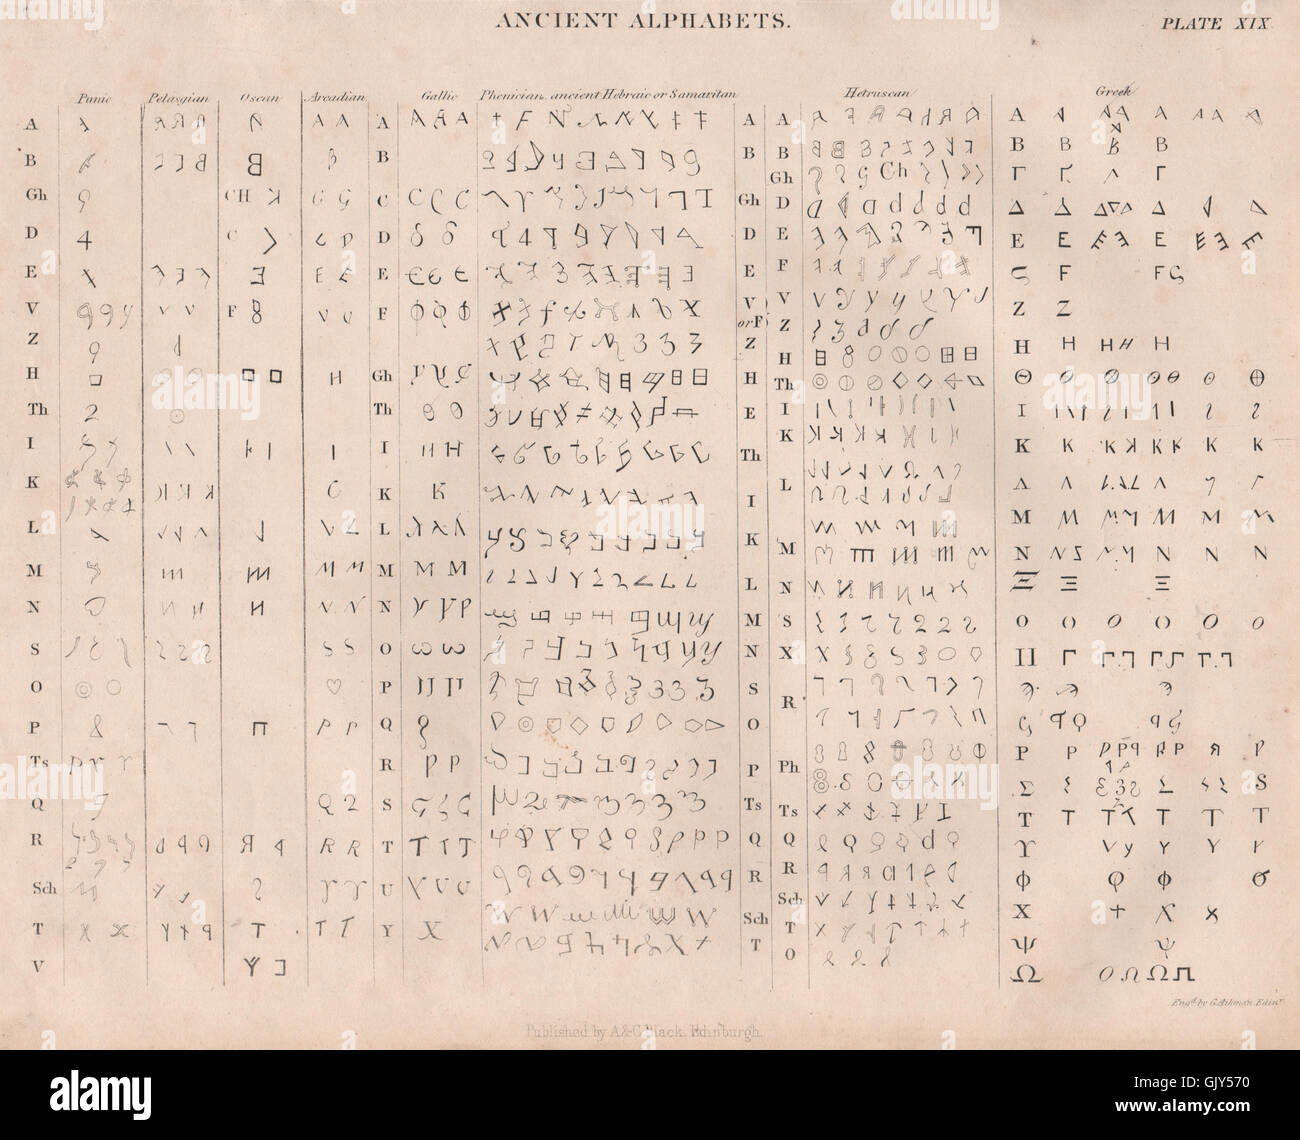 Alten Alphabete. Punischen Pelagasian Oscan arkadischen gallischen Hetruscan hebräischen 1860 Stockfoto